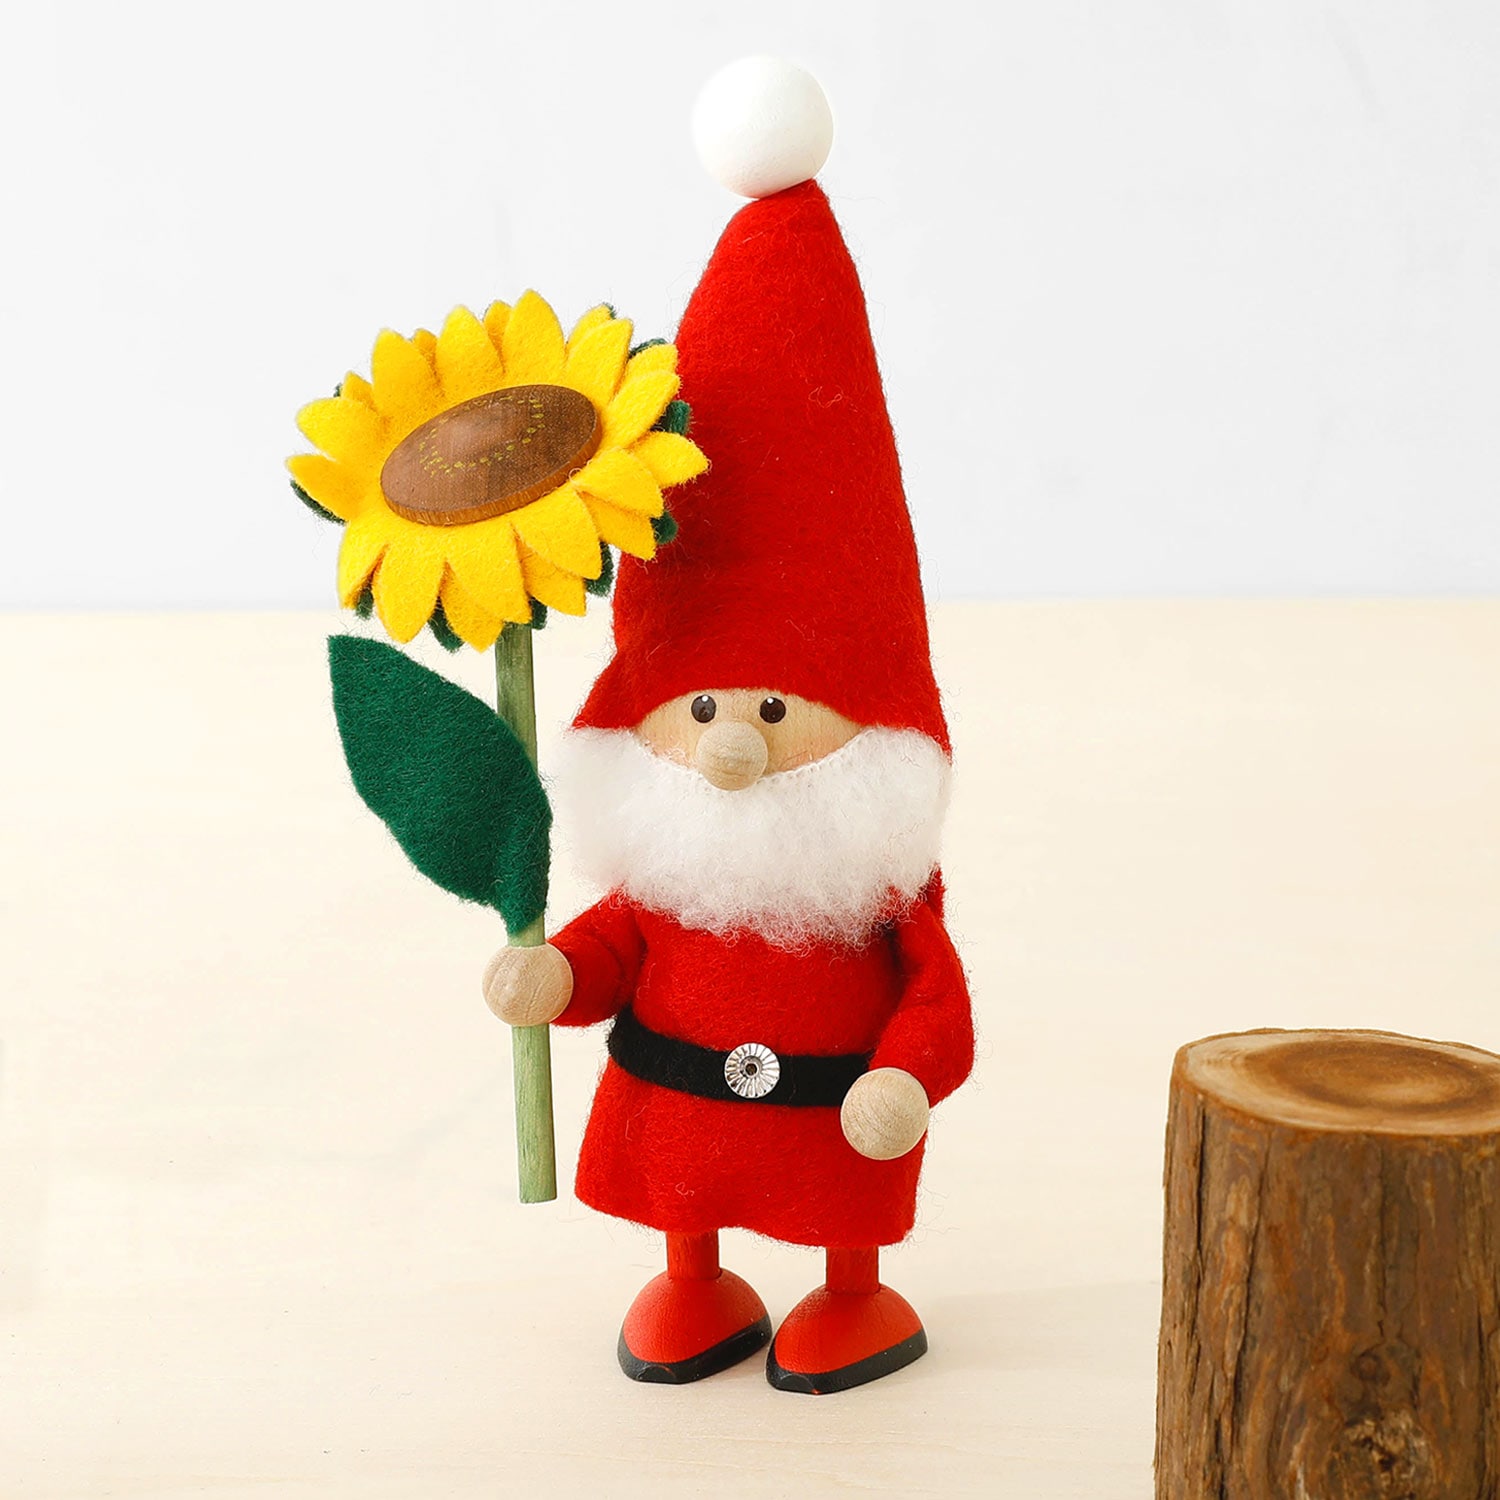 【2022年新作】NORDIKA nisse ノルディカ ニッセ 人形 ハートフルサンタ ひまわり クリスマス オブジェ 北欧 木製 置物 プレゼント ギフト